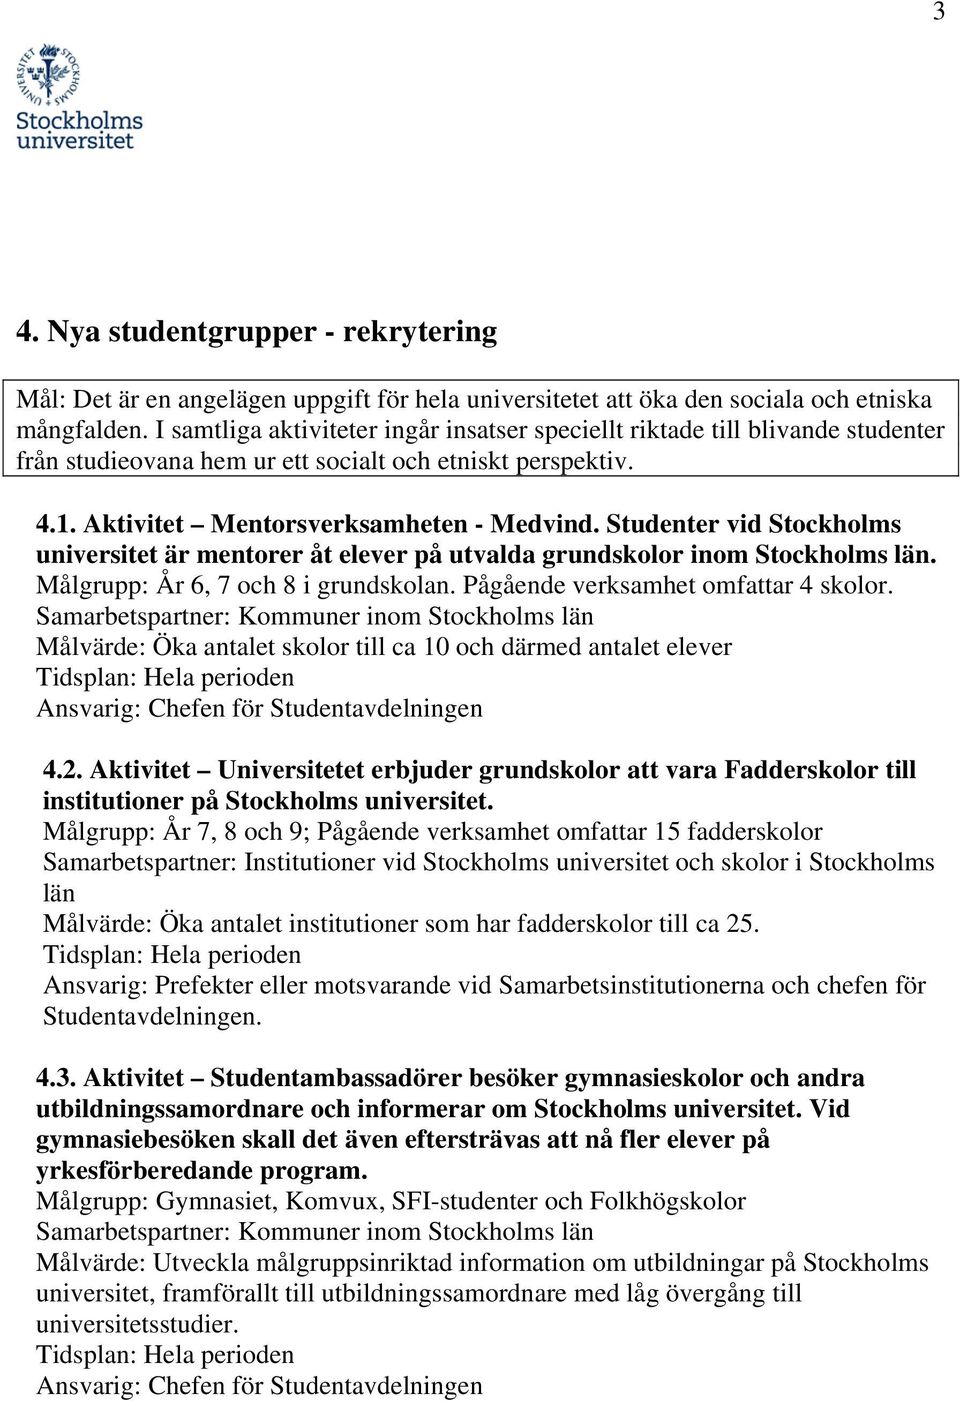 Studenter vid Stockholms universitet är mentorer åt elever på utvalda grundskolor inom Stockholms län. Målgrupp: År 6, 7 och 8 i grundskolan. Pågående verksamhet omfattar 4 skolor.